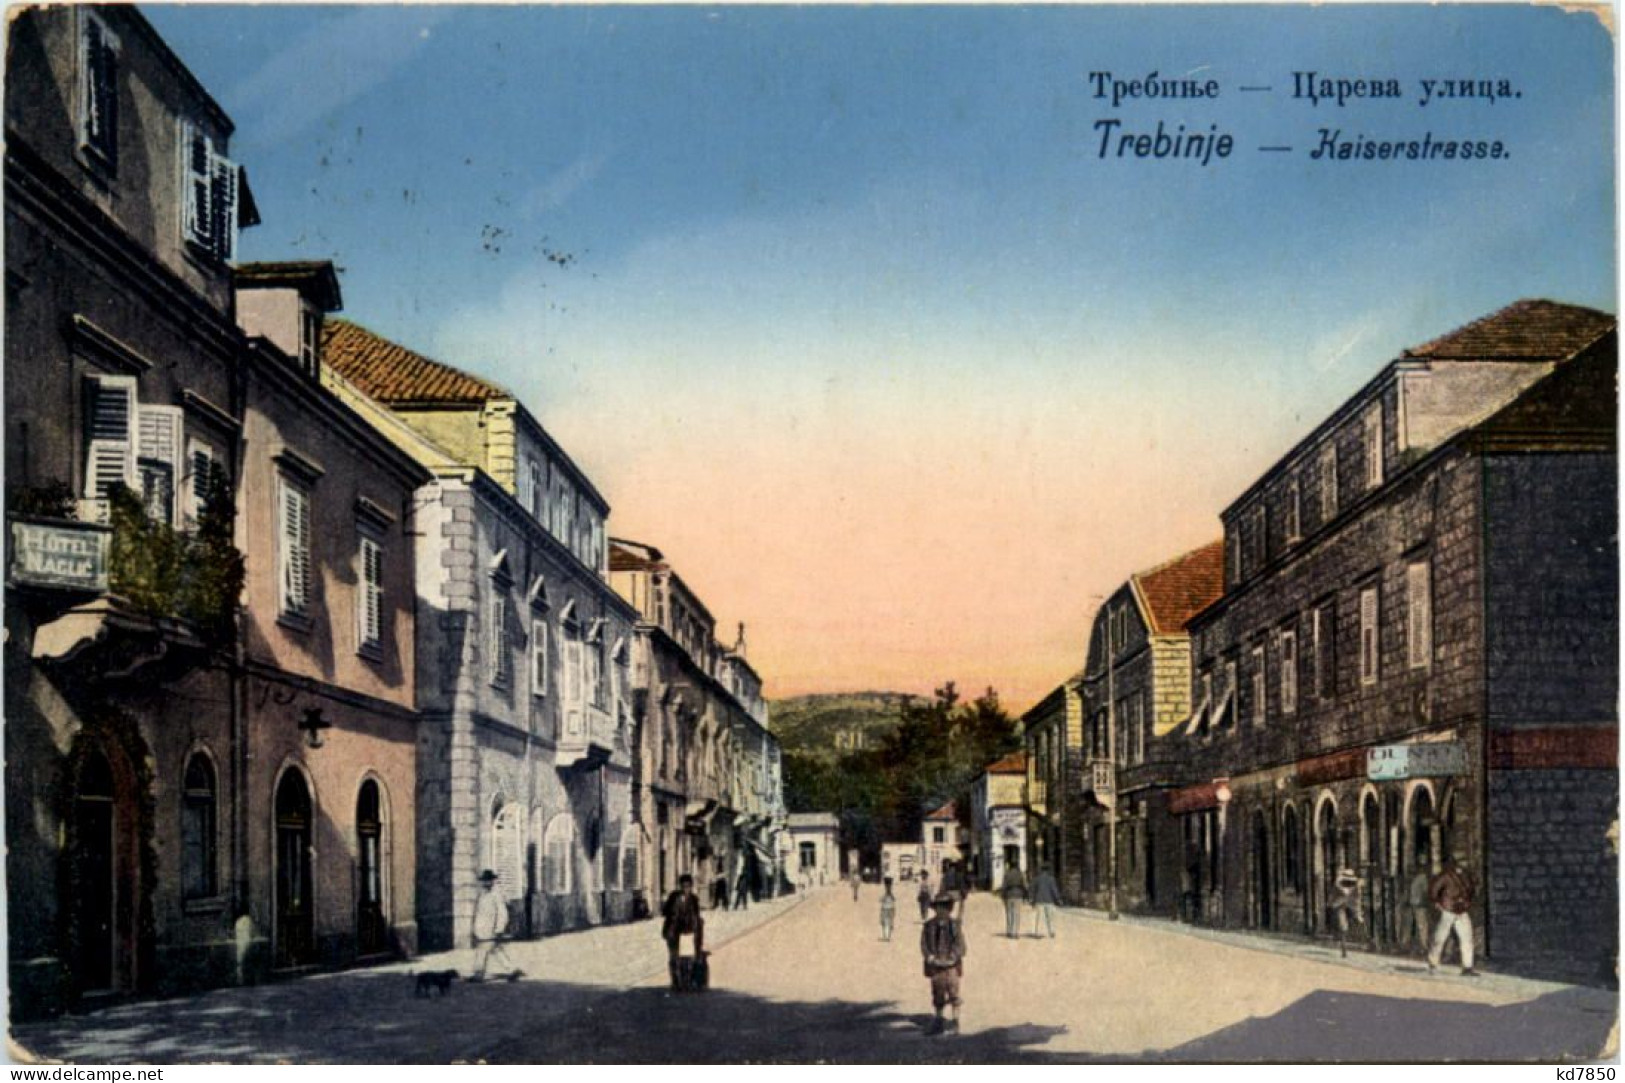 Trebinje - Kaiserstrasse - Bosnien-Herzegowina